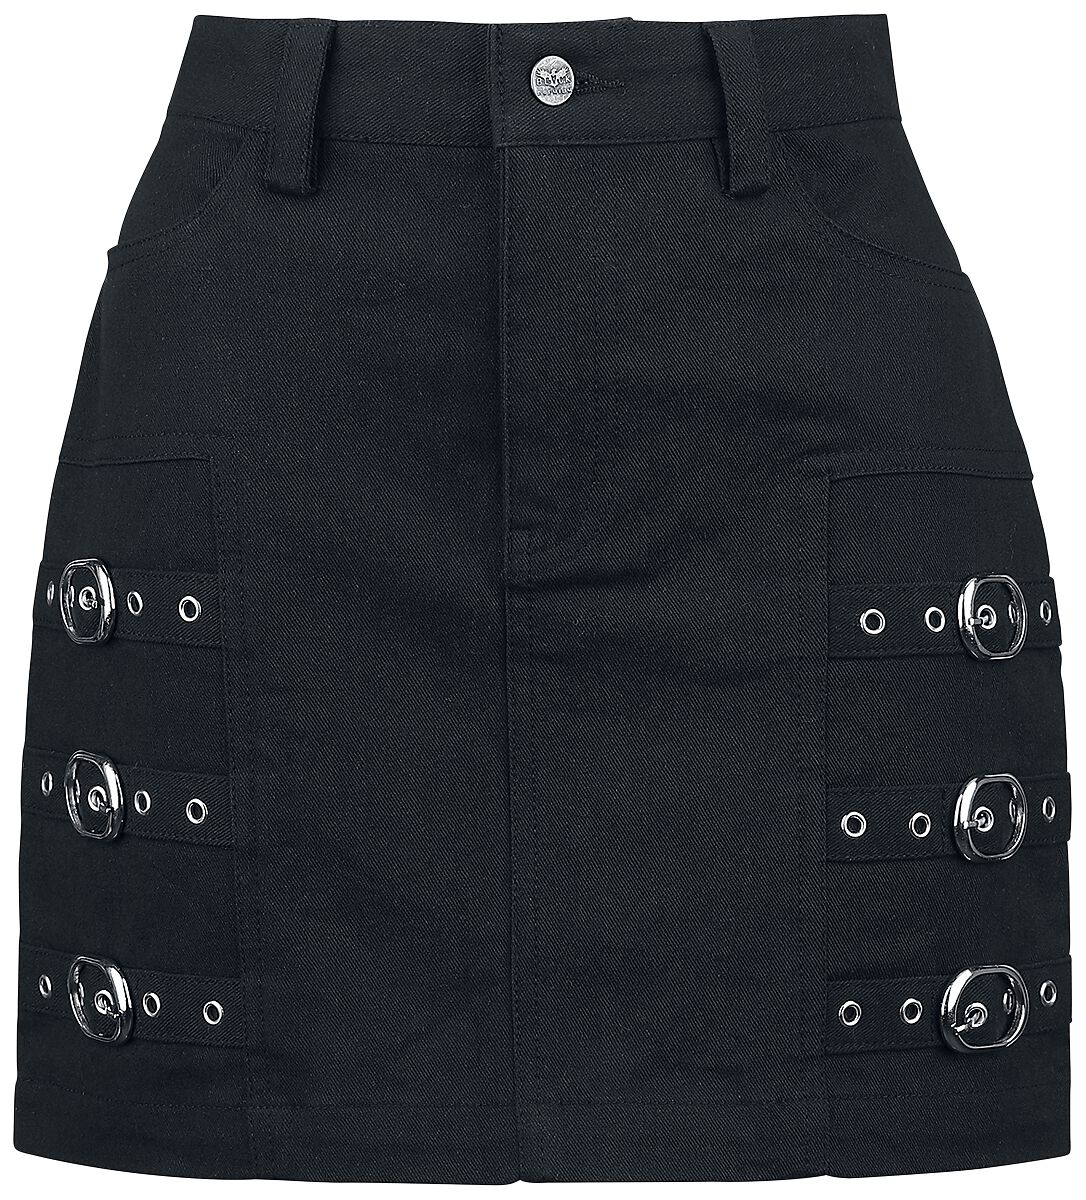 Black Premium by EMP Kurzer Rock - Short Skirt with decorative Buckles - S bis XXL - für Damen - Größe XXL - schwarz